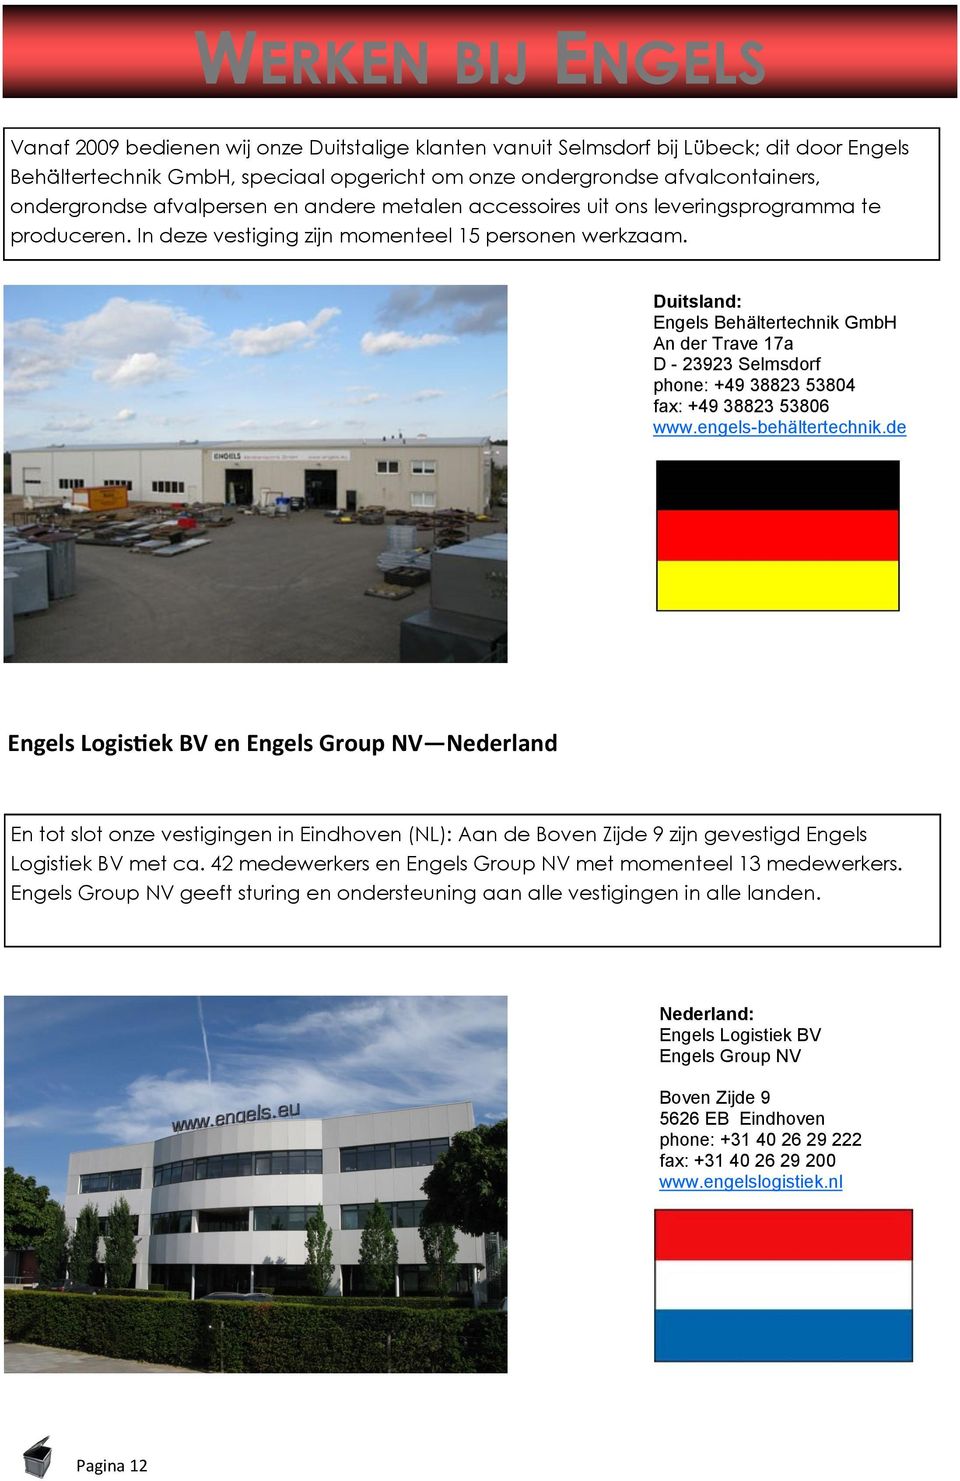 Duitsland: Engels Behältertechnik GmbH An der Trave 17a D - 23923 Selmsdorf phone: +49 38823 53804 fax: +49 38823 53806 www.engels-behältertechnik.